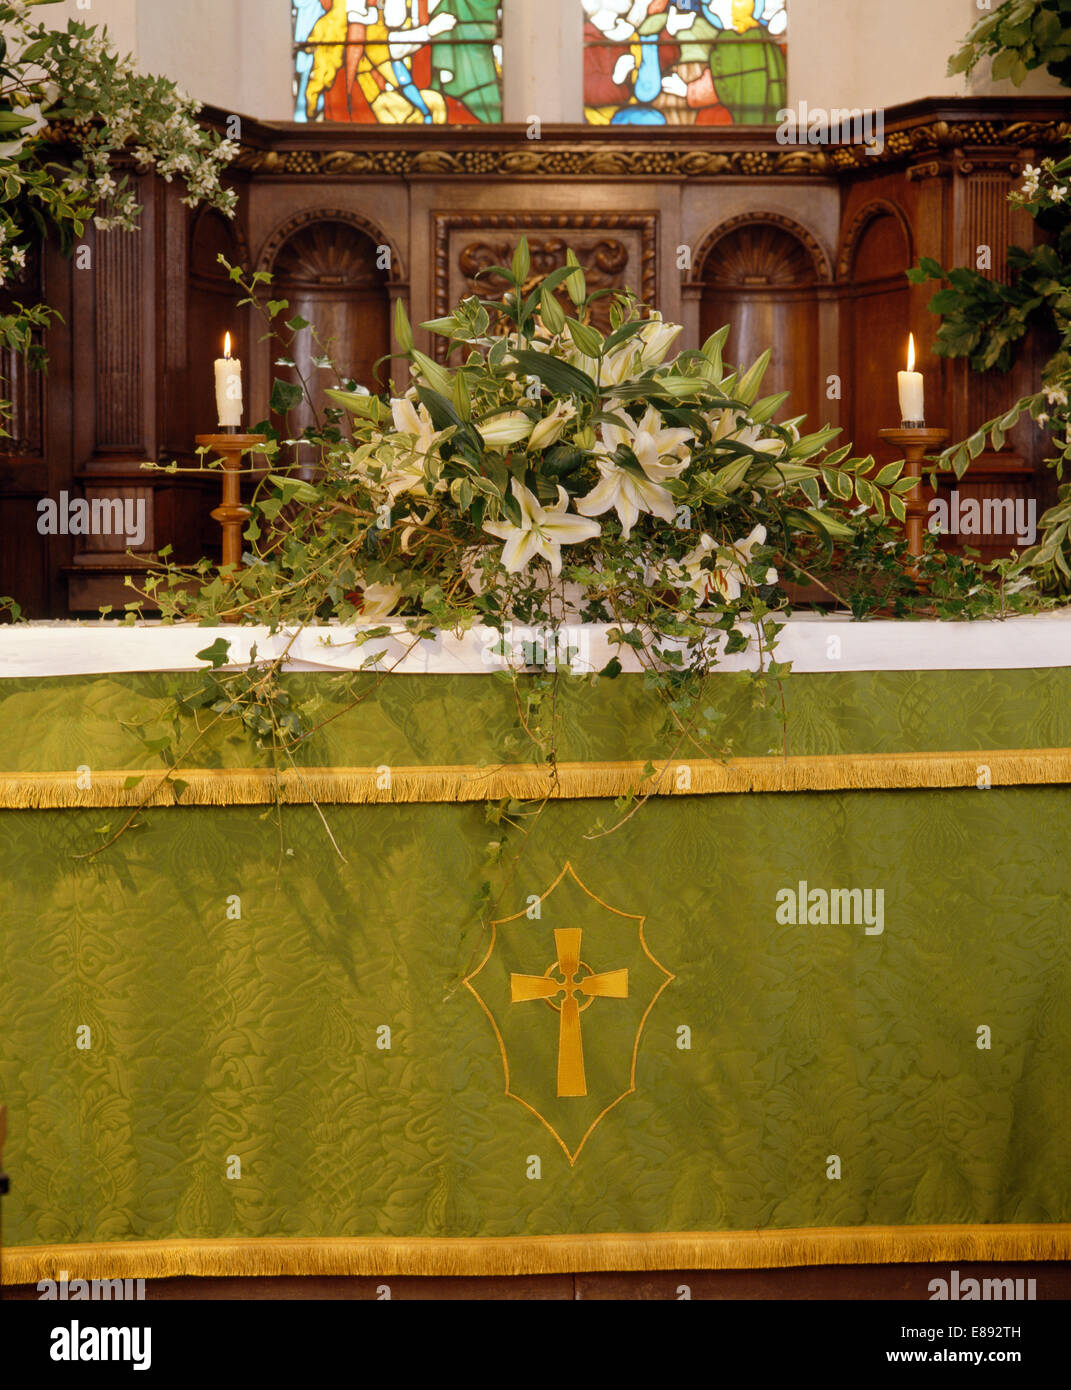 Composizioni Floreali Di Gigli Bianchi Sull Altare Della Chiesa Di Campagna Decorate Per Un Matrimonio Estivo Foto Stock Alamy